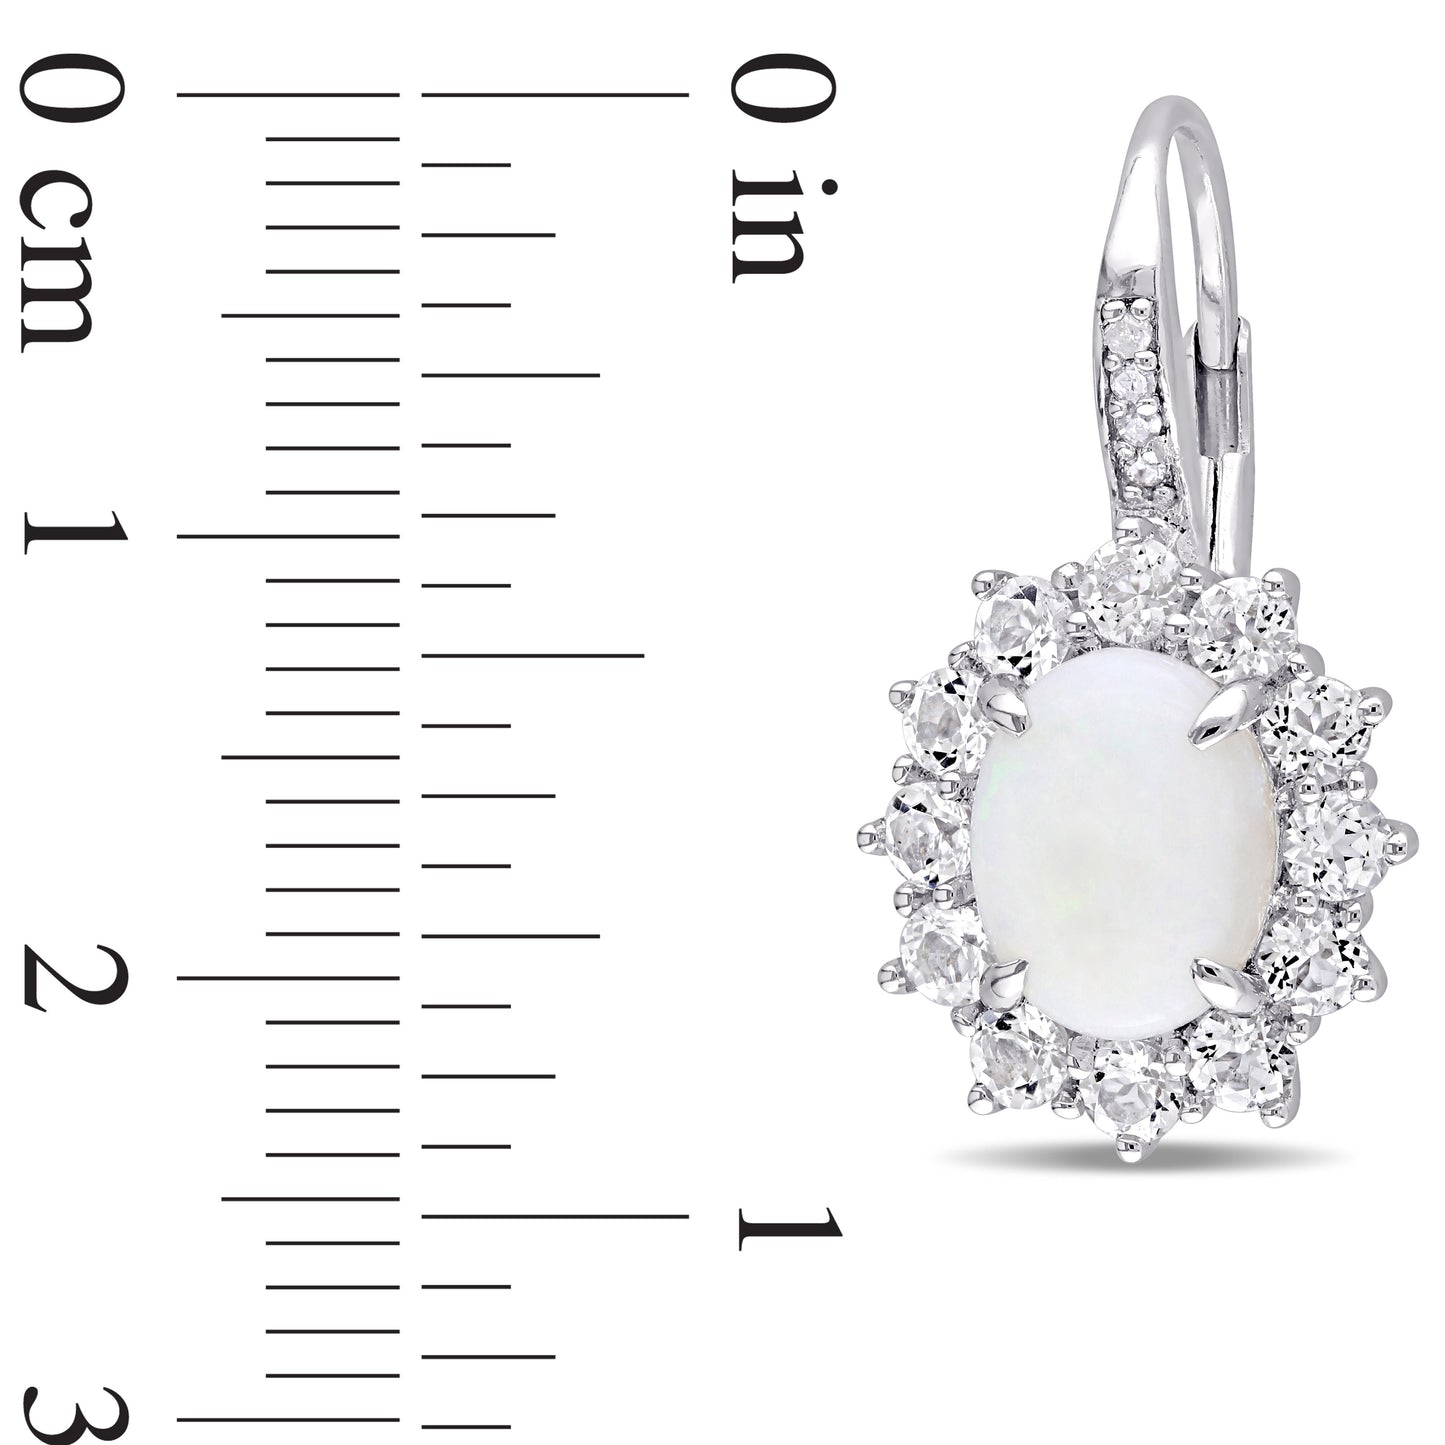 Opal White Topaz & Diamond LeverBack Earrings in Stirling Silver